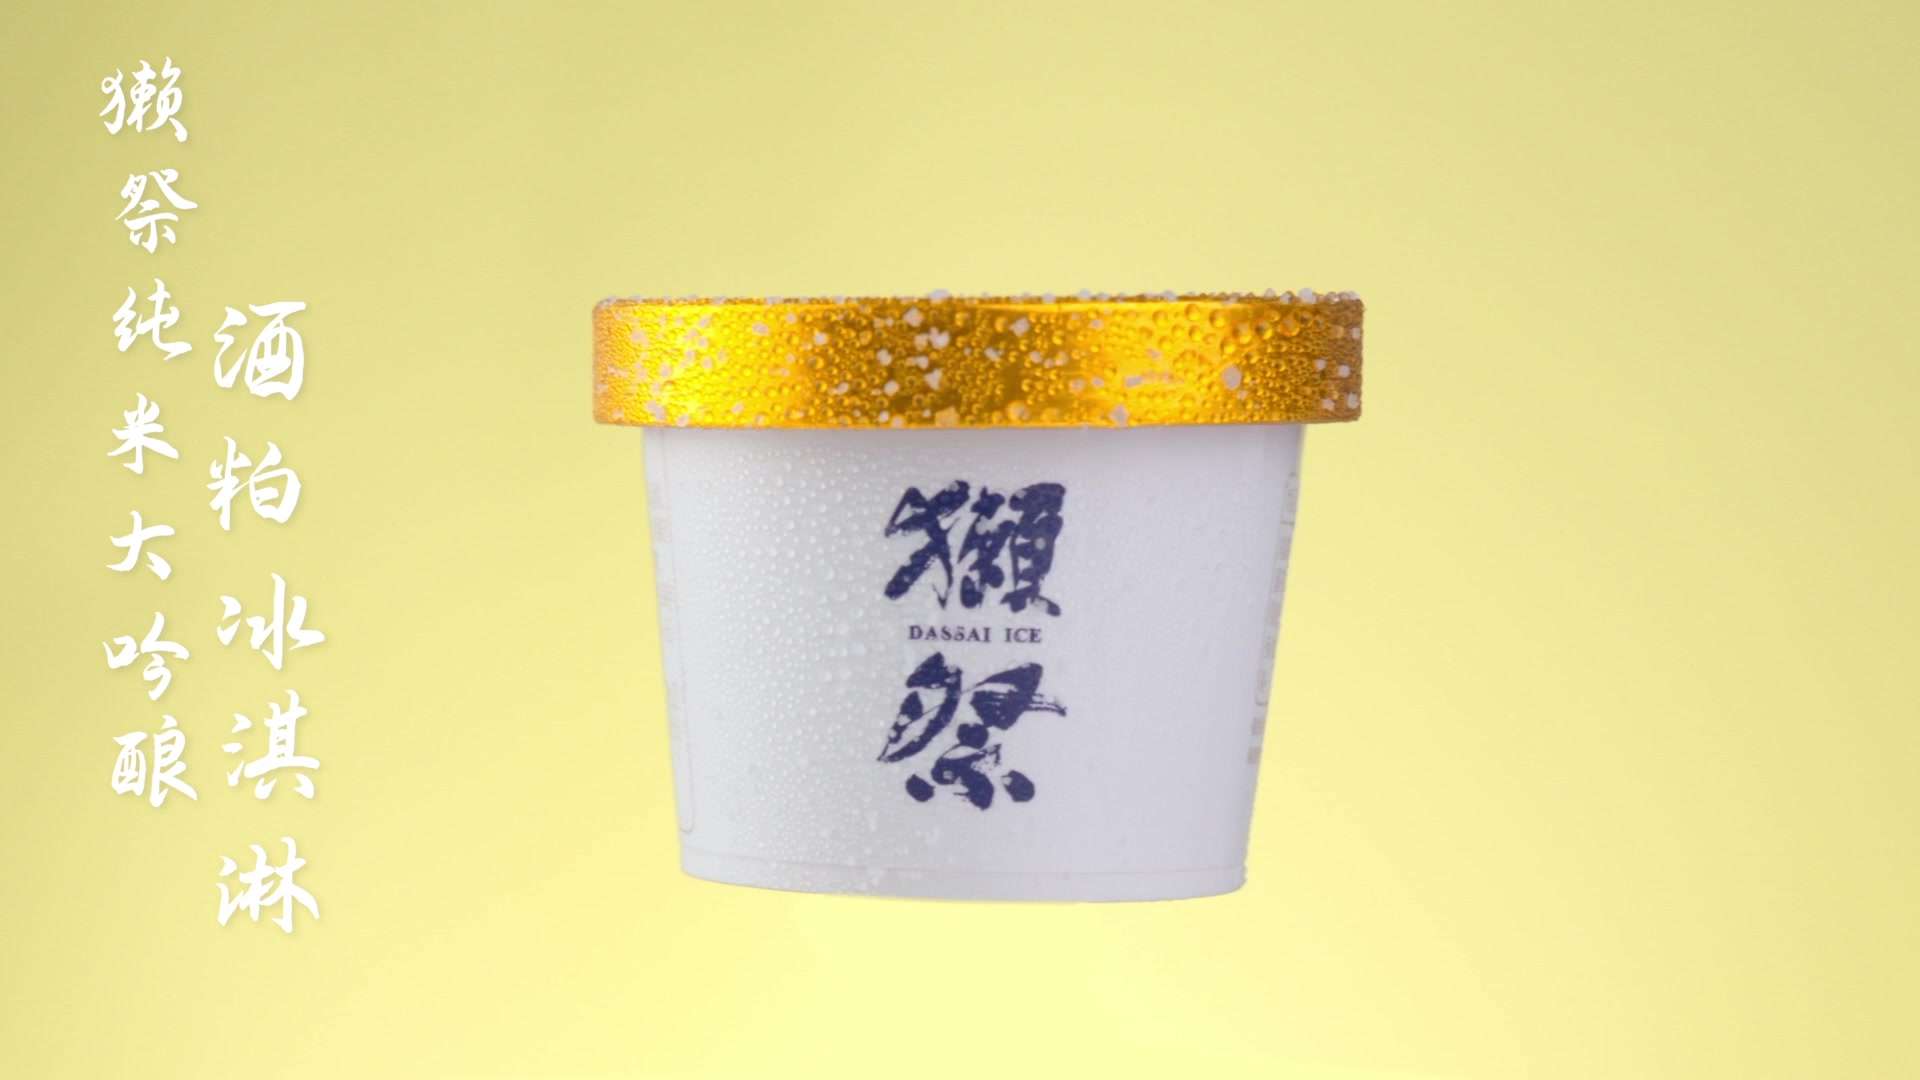 恩希传媒/獭祭酒粕冰淇淋